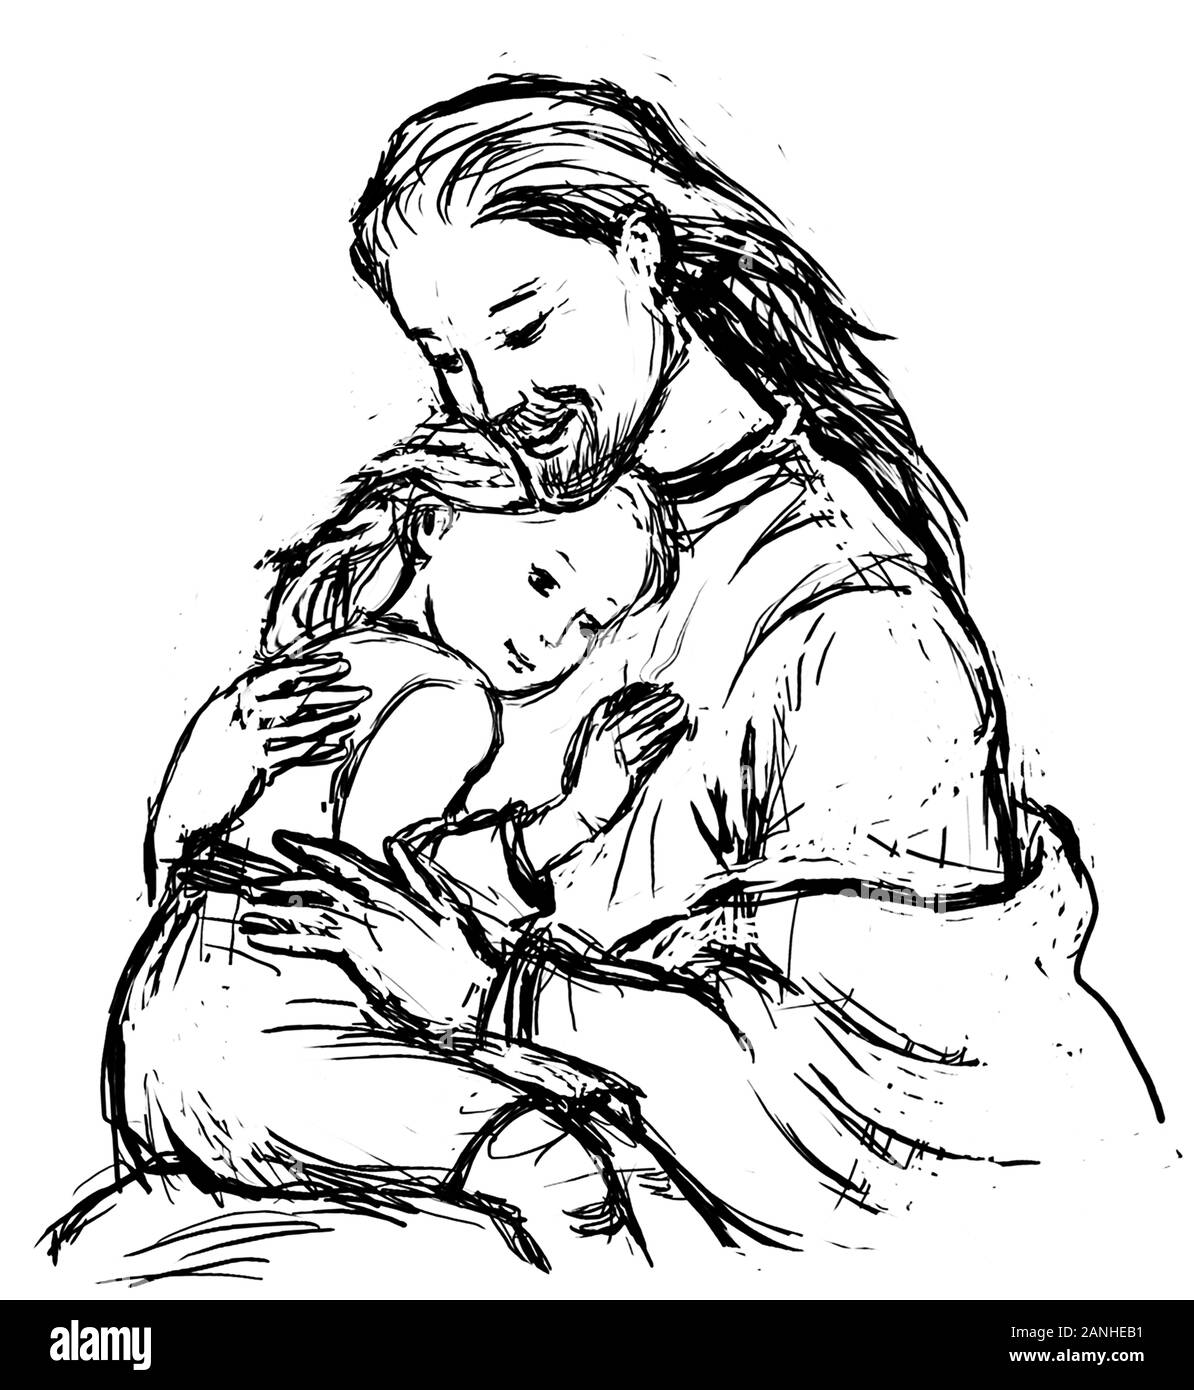 Gesù Che Abbraccia Il Bambino Giovane. Illustrazione o schizzo del disegno penna e inchiostro Foto Stock